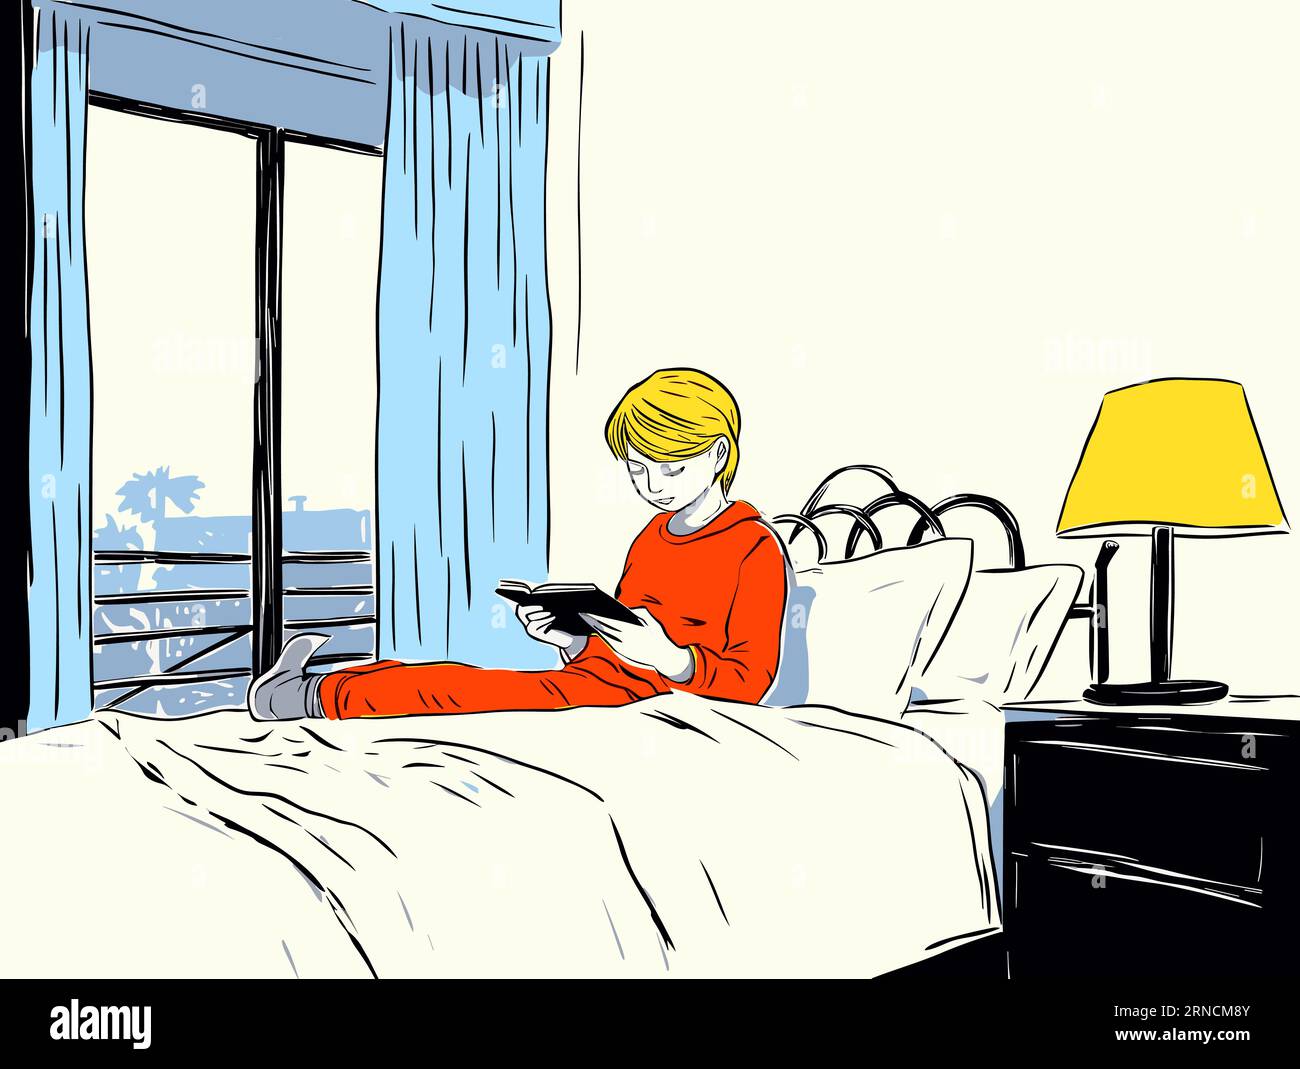 Mädchen, das auf Einem weißen Bett liegt und Ein rotes Hemd trägt, im Stil journalistischer Cartoons, Storybook Illustration Stock Vektor